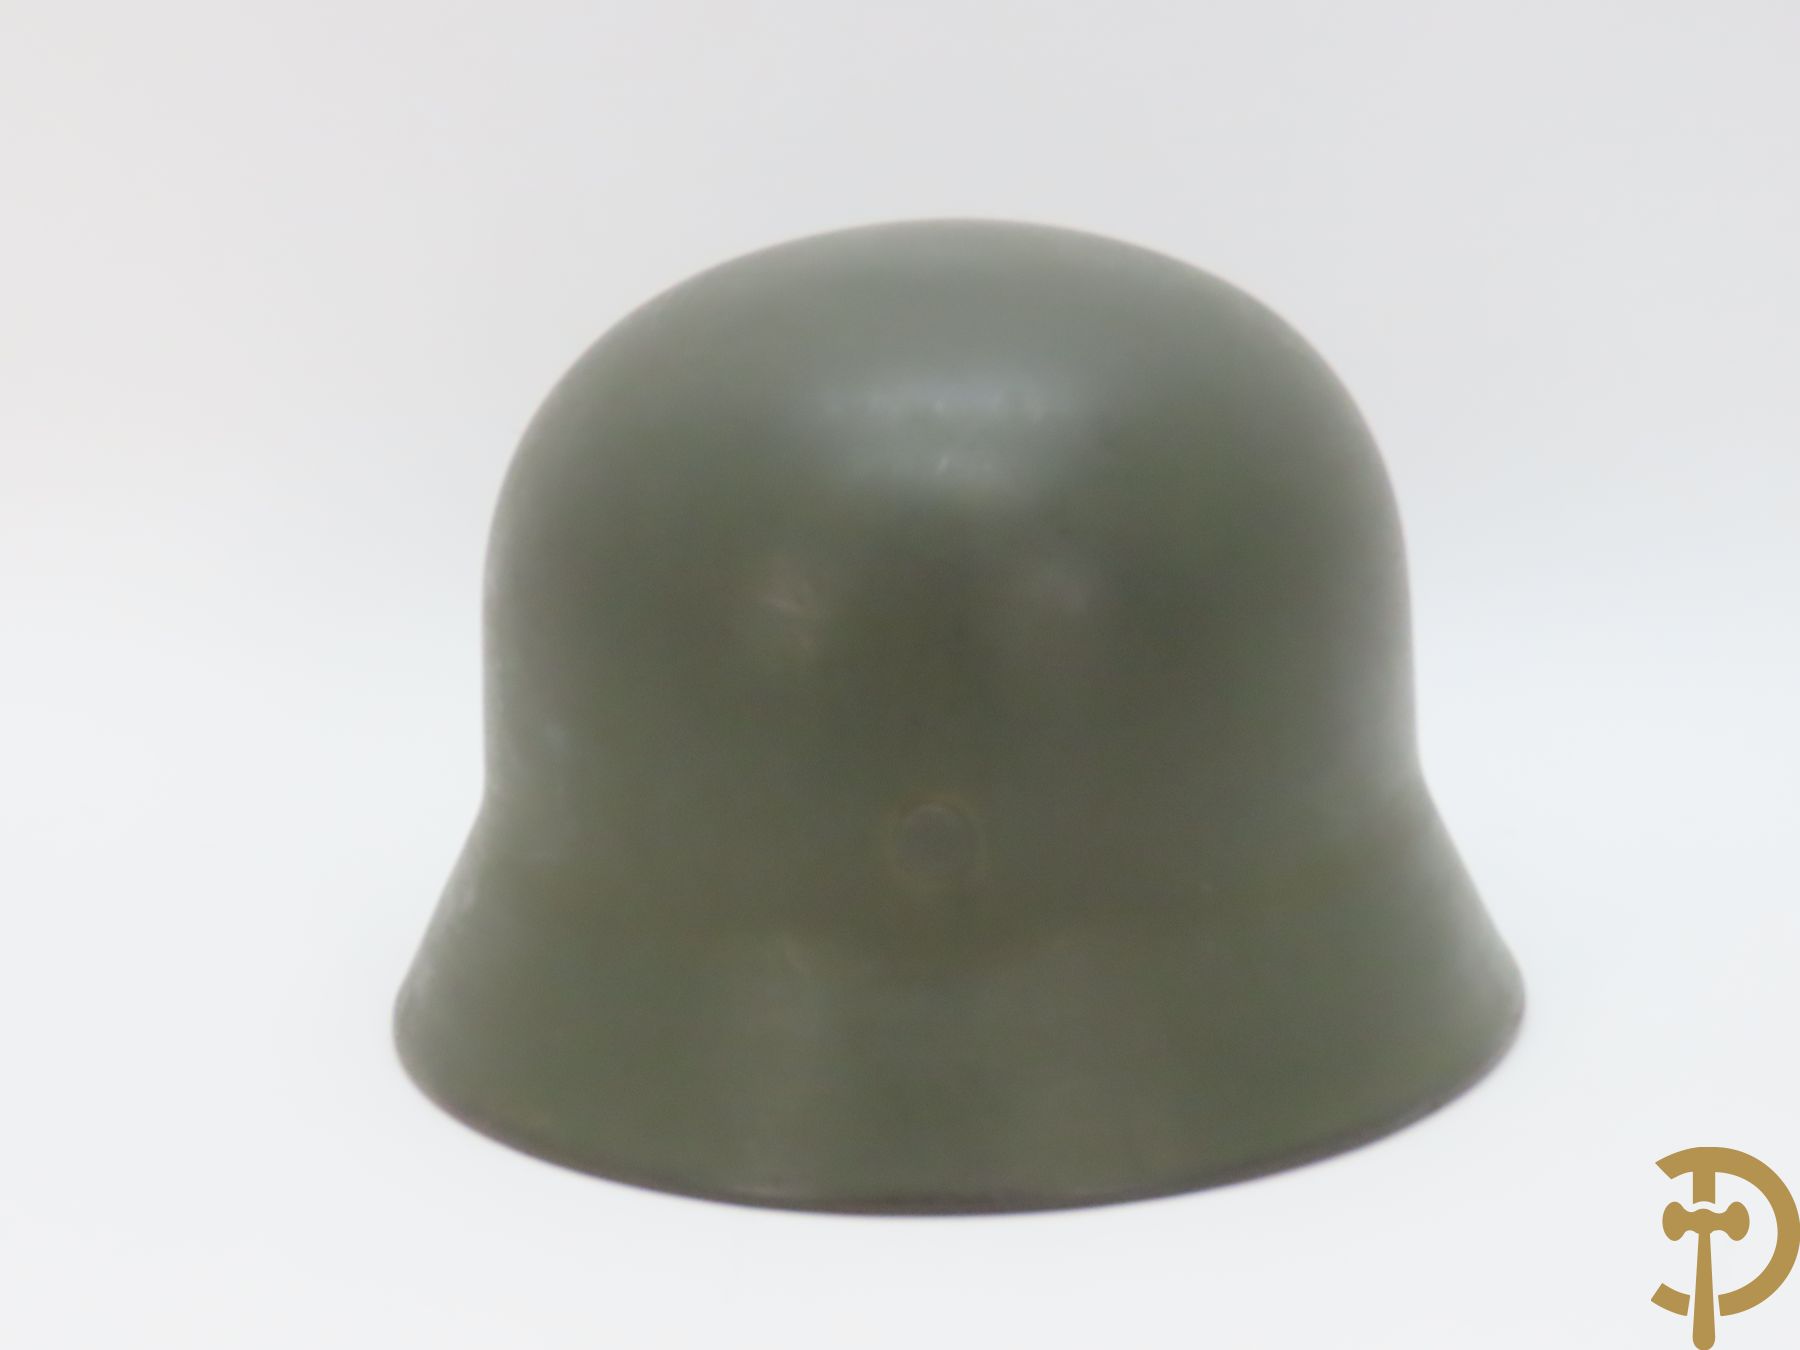 Duitse helm NSKK gemerkt, DN 260 gestanst binnenin (zonder echtheidsgarantie - waarschijnlijk recenter binnenwerk)